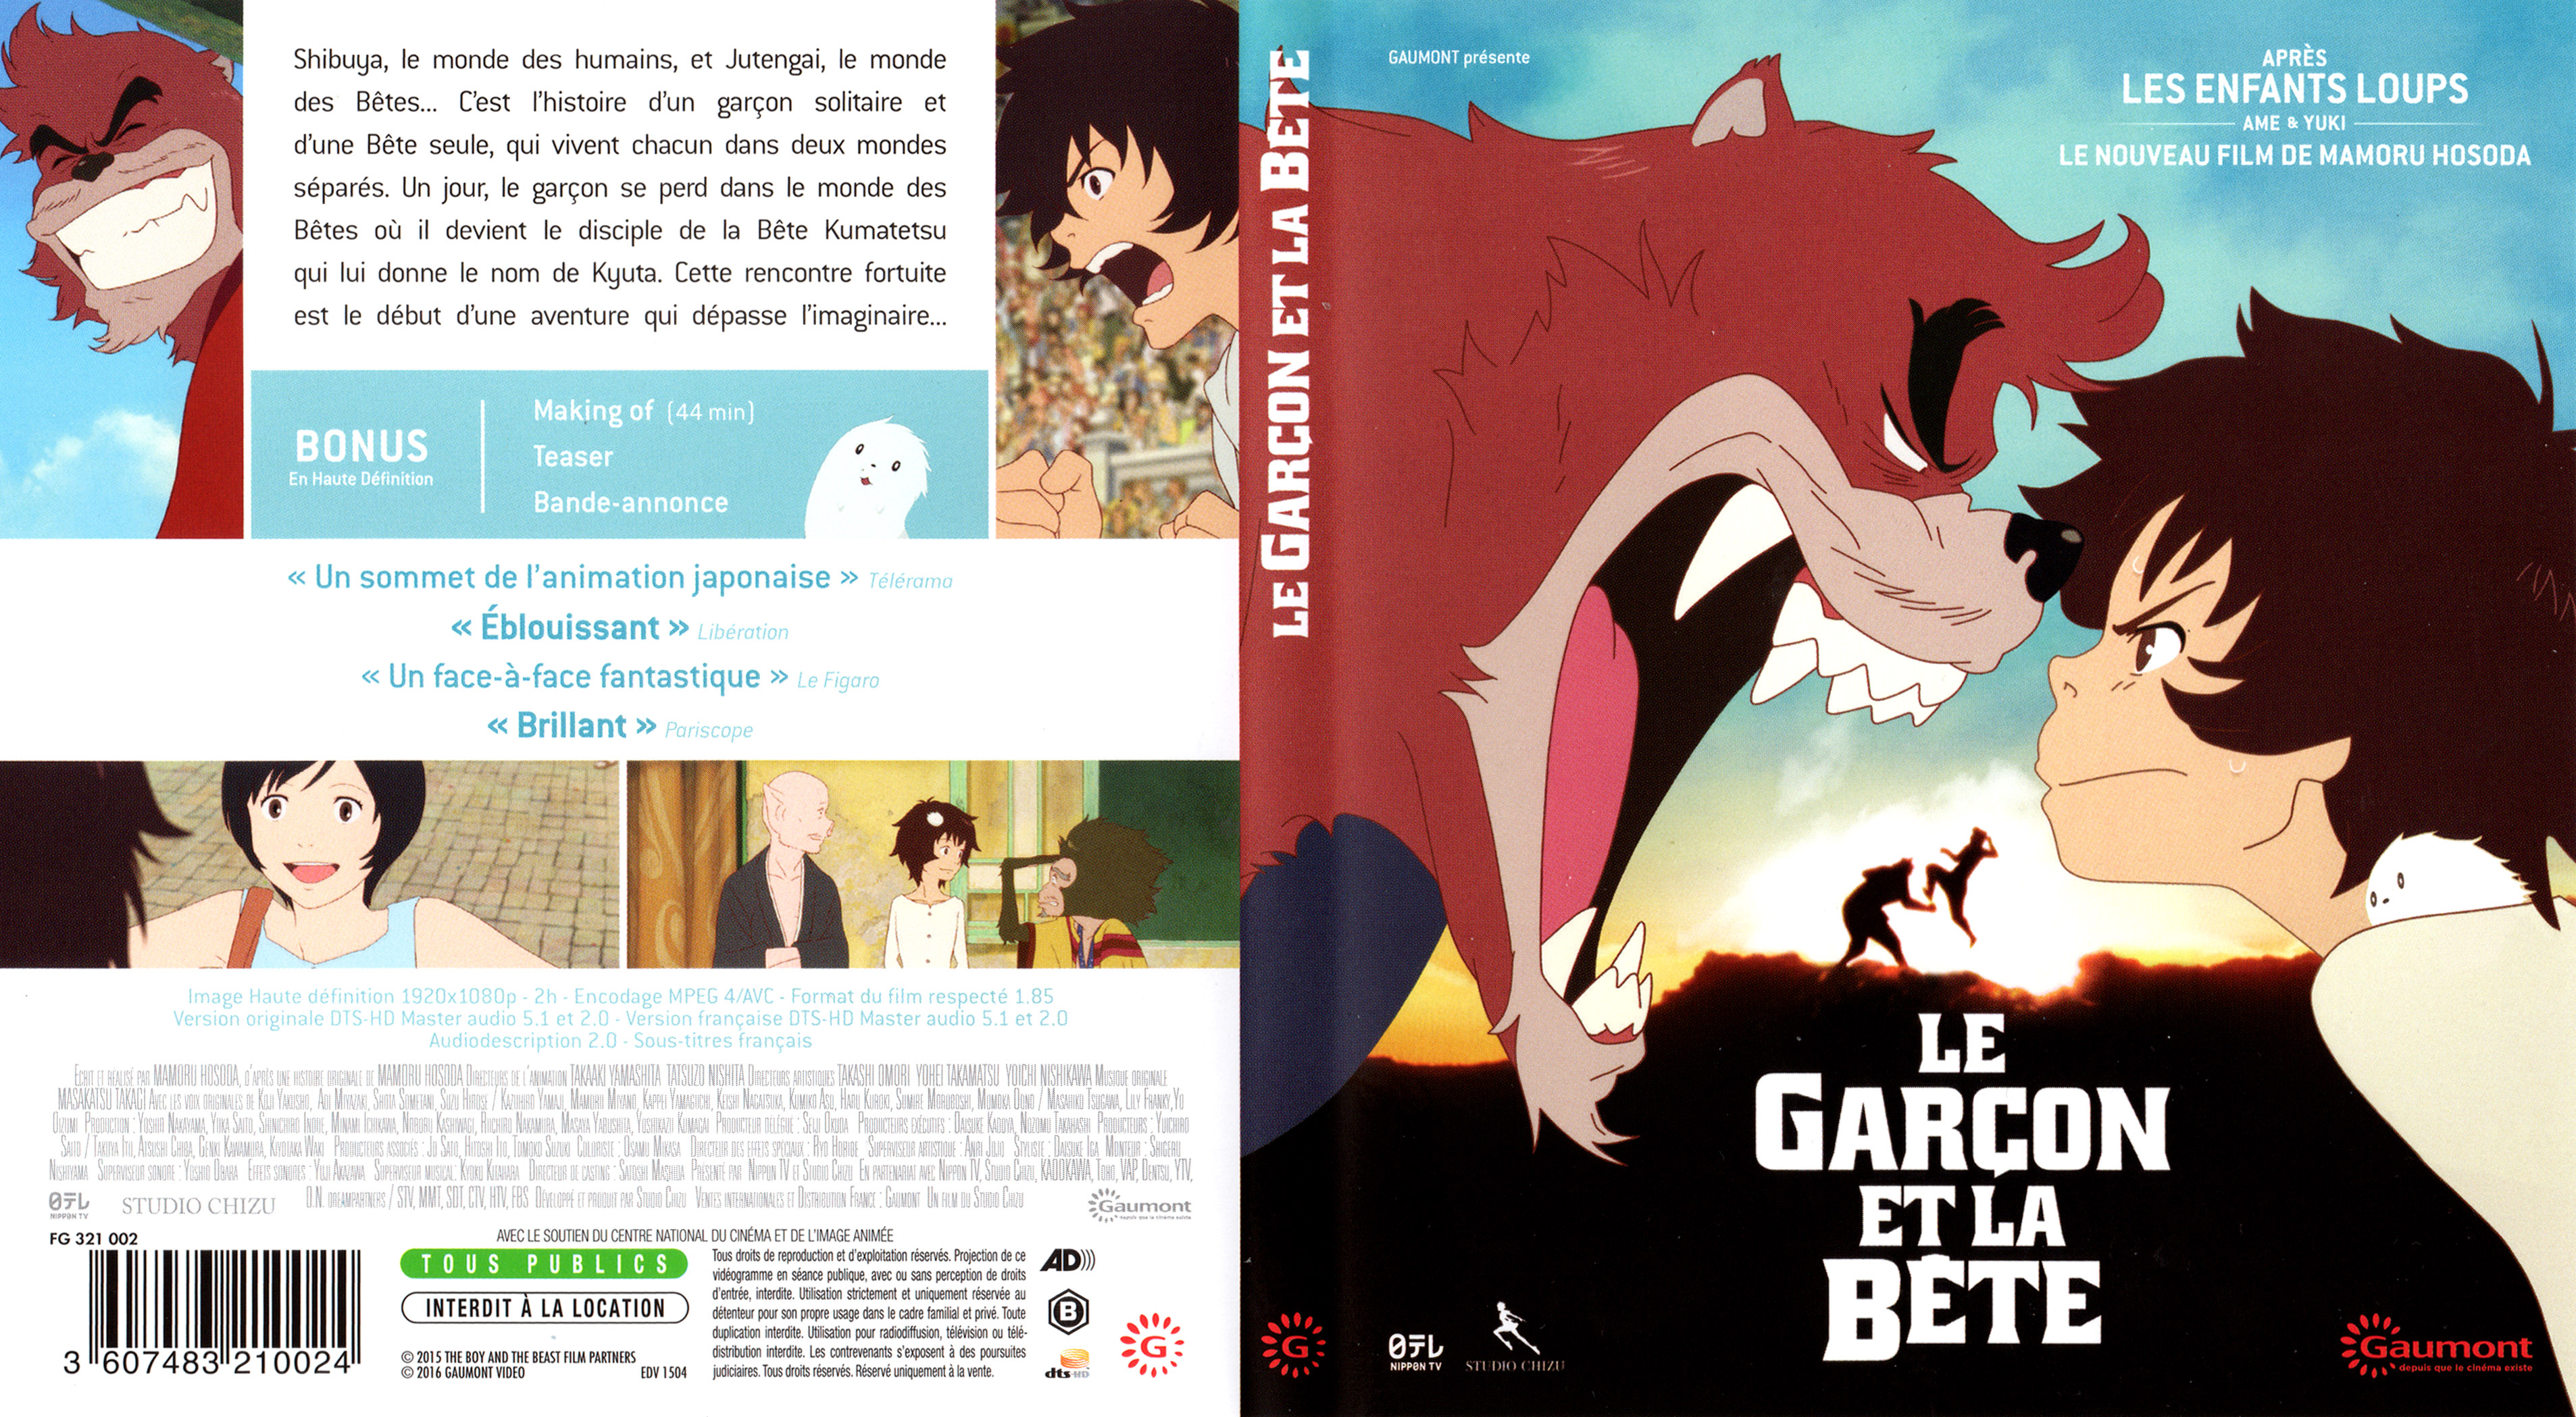 Jaquette DVD Le garcon et la bete (BLU-RAY)